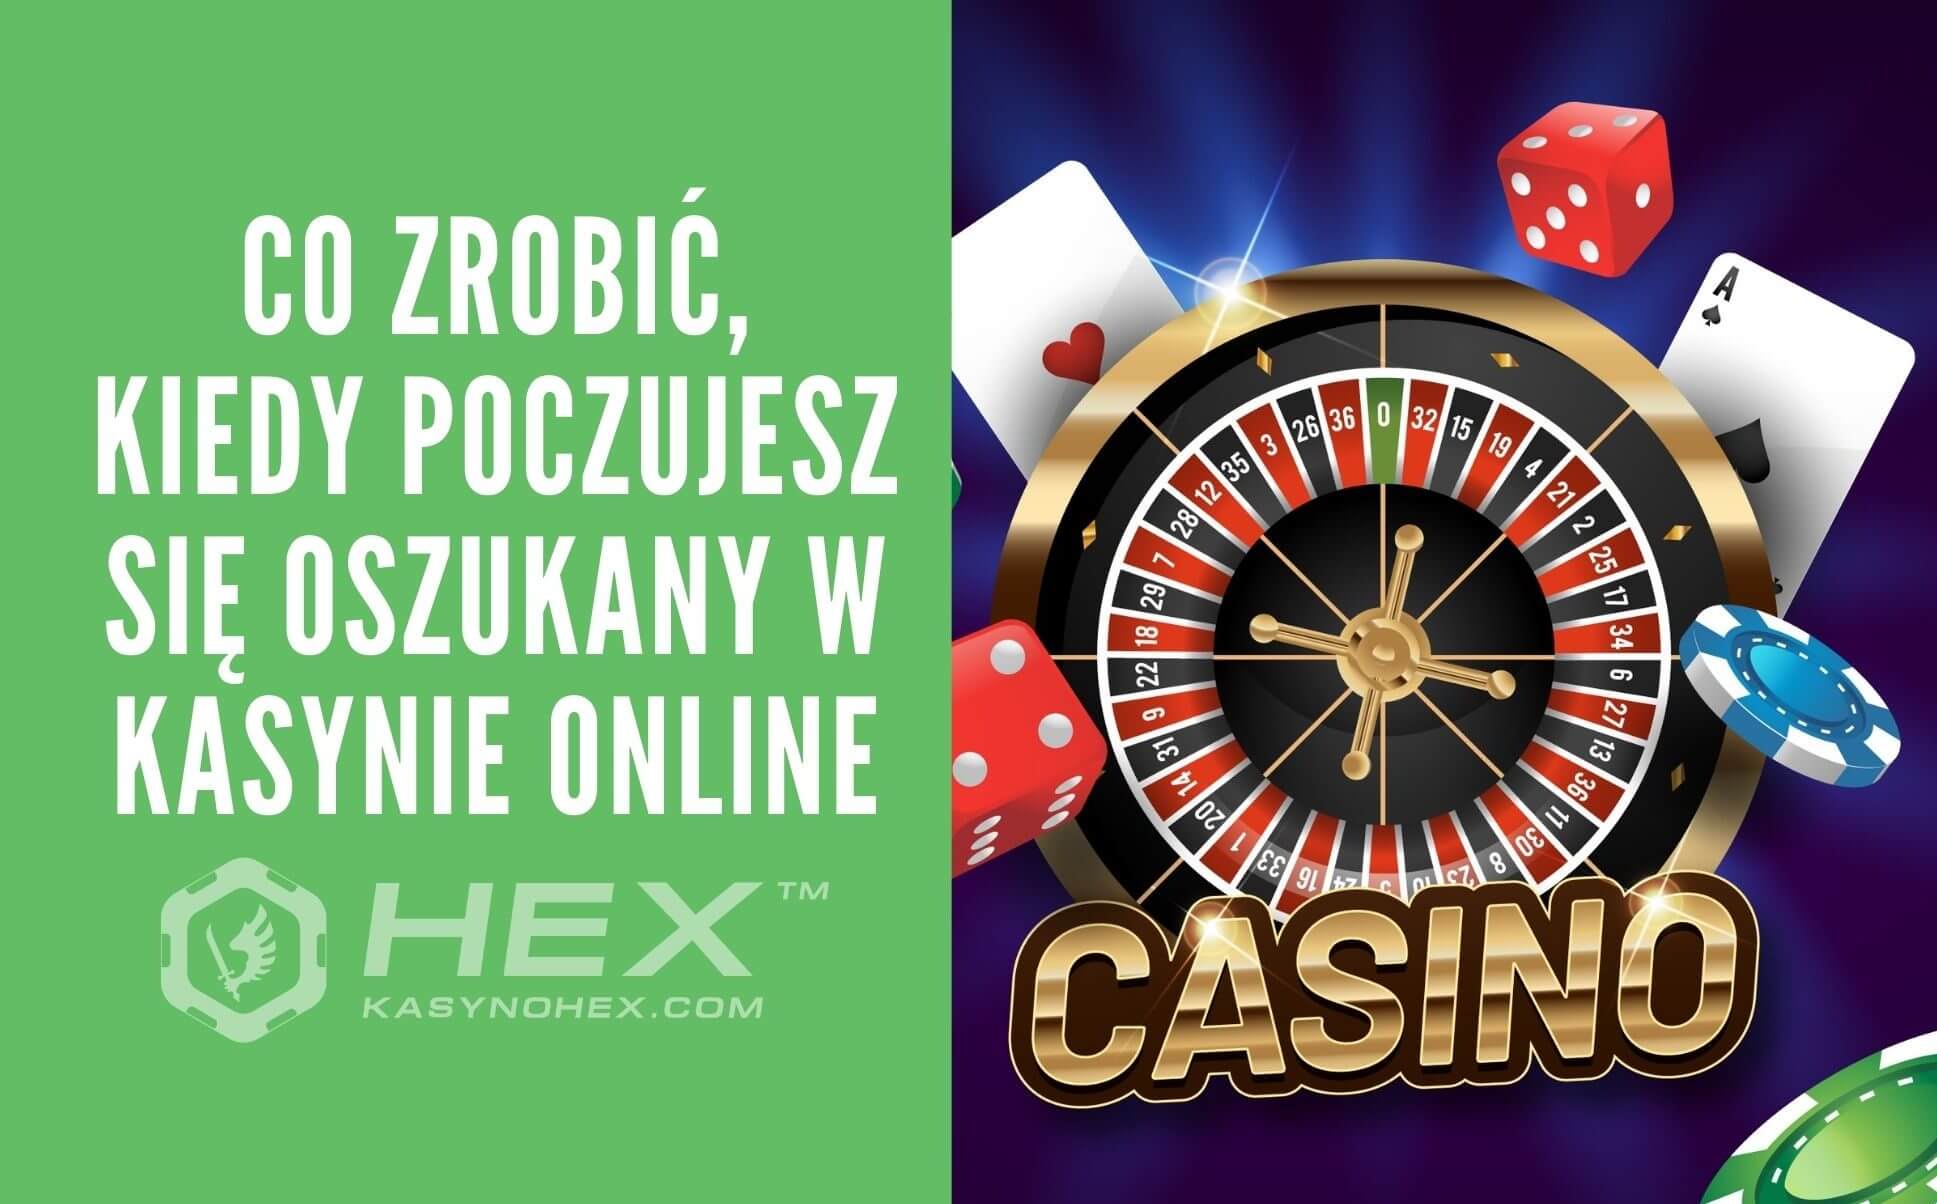 Oto, co powinieneś zrobić dla swojego kasyna online w złotówkach